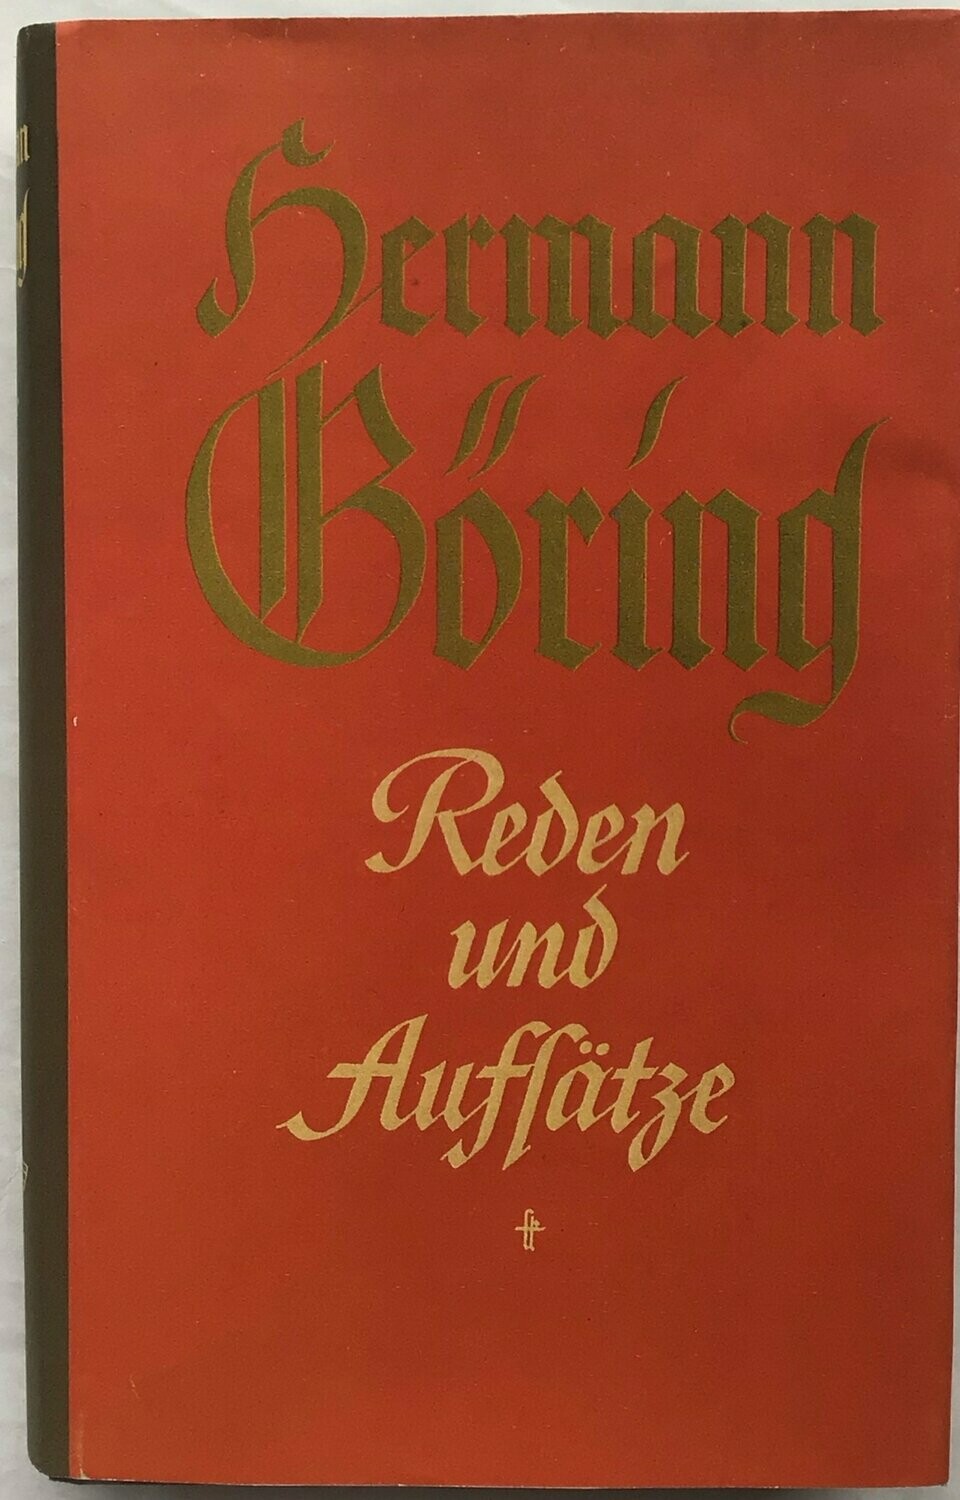 Hermann Göring - Reden und Aufsätze - Ganzleinenausgabe mit Schutzumschlag (Kopie) - 3. Auflage aus 1939